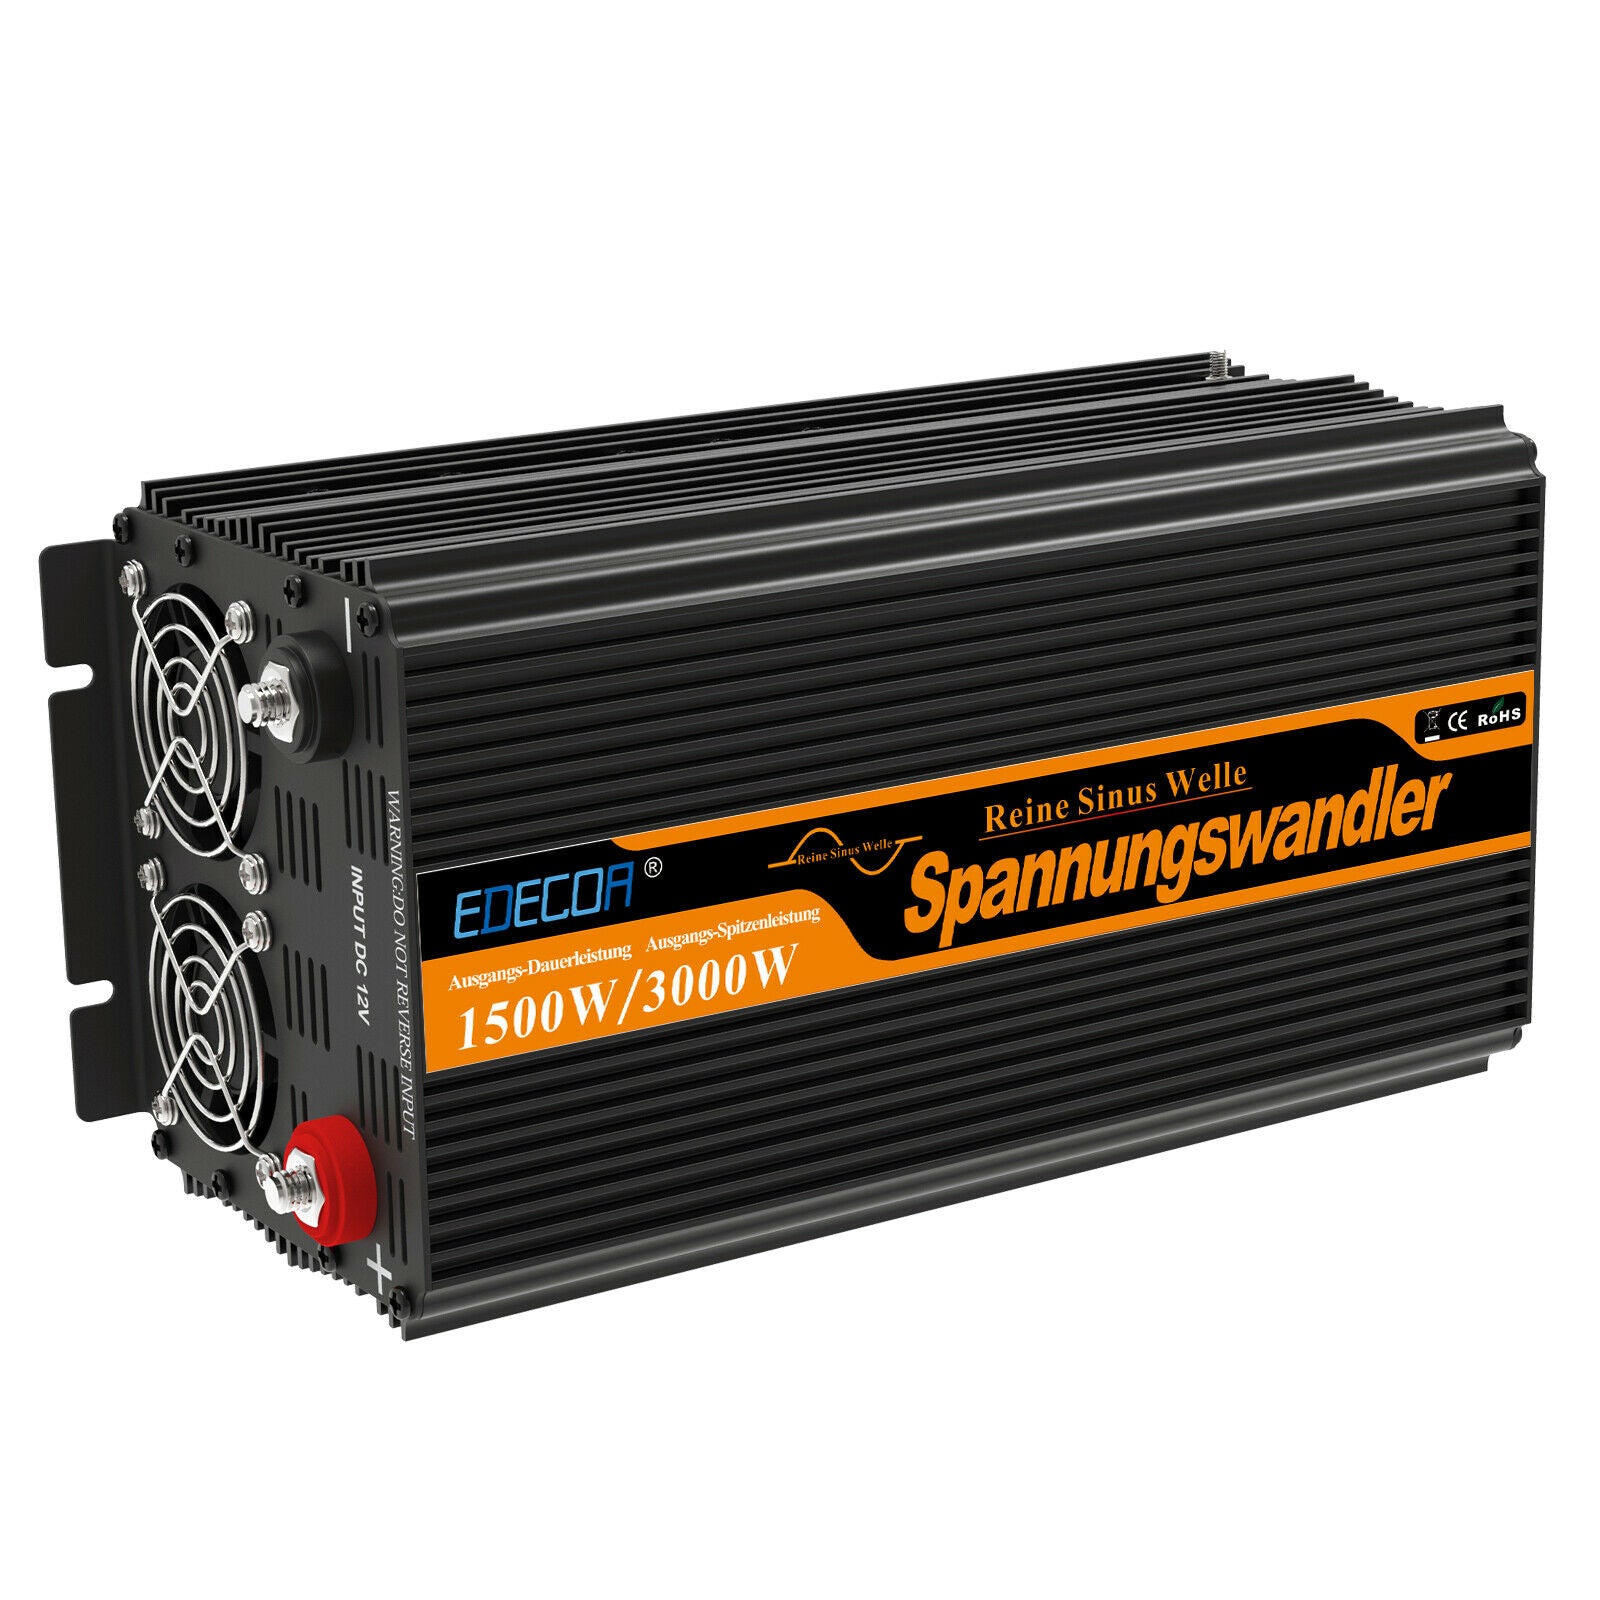 Convertisseur PUR-SINUS 230V 3000W (pic 6000W) SOPURE VECHLINE  SOPUREVECHLINE - CD10419 vechline_power 